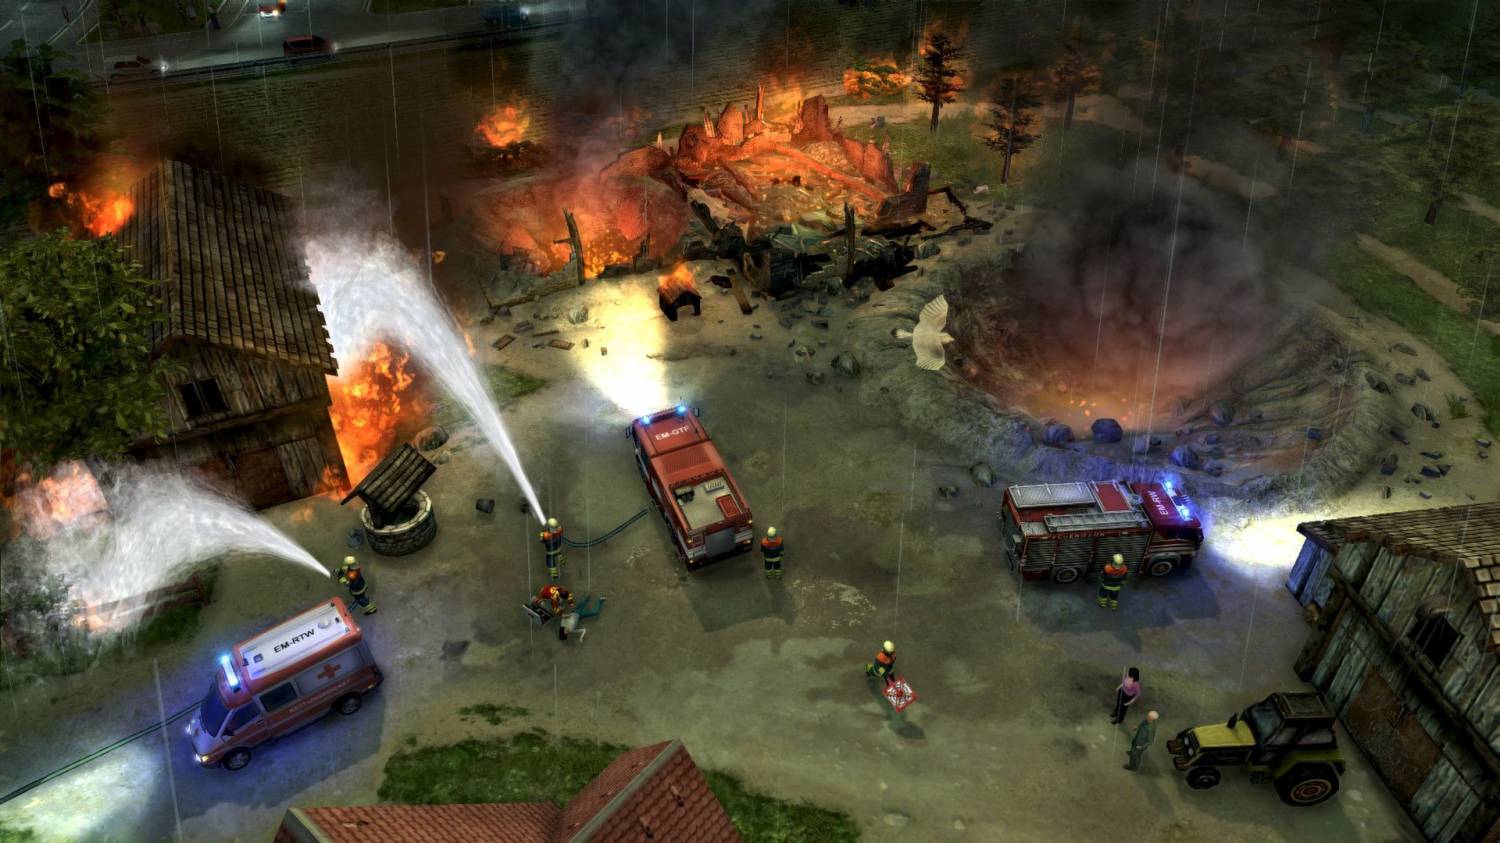 Скриншот 1 к игре Emergency 2014 (2013) PC | RePack от xatab